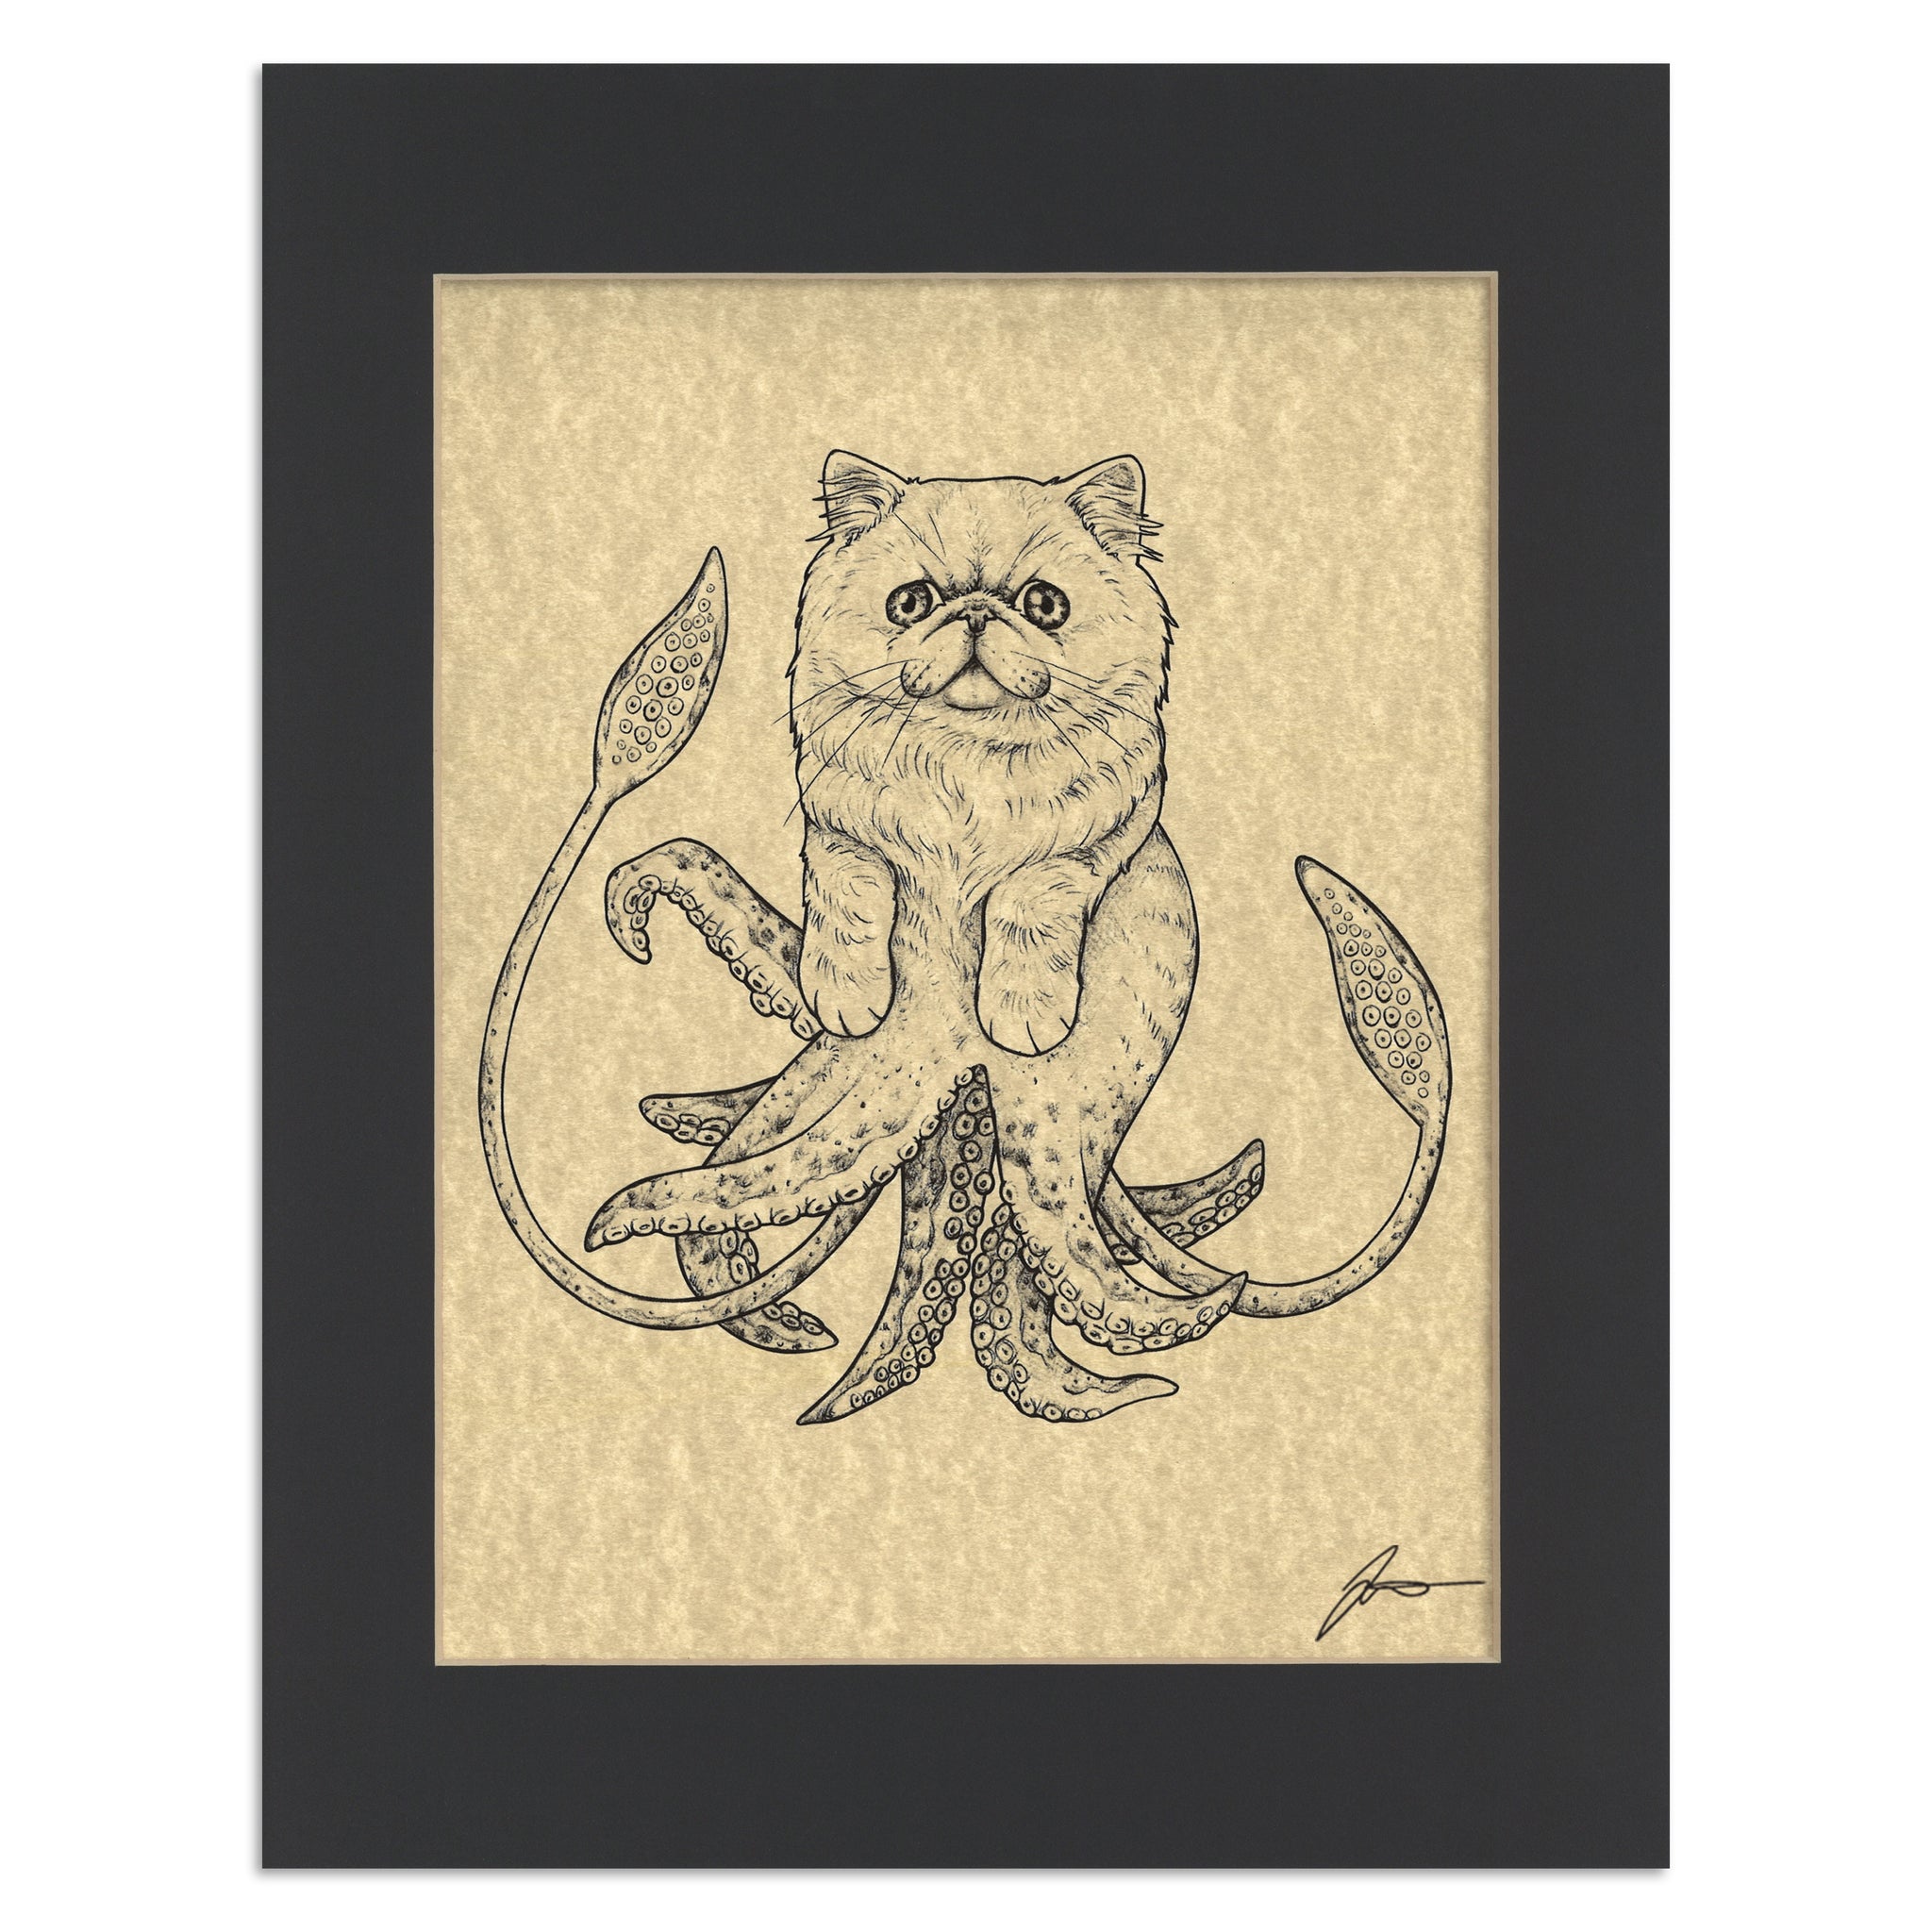 Squitten | Squid + Kitten Hybrid Animal | 11x14" Parchment Print